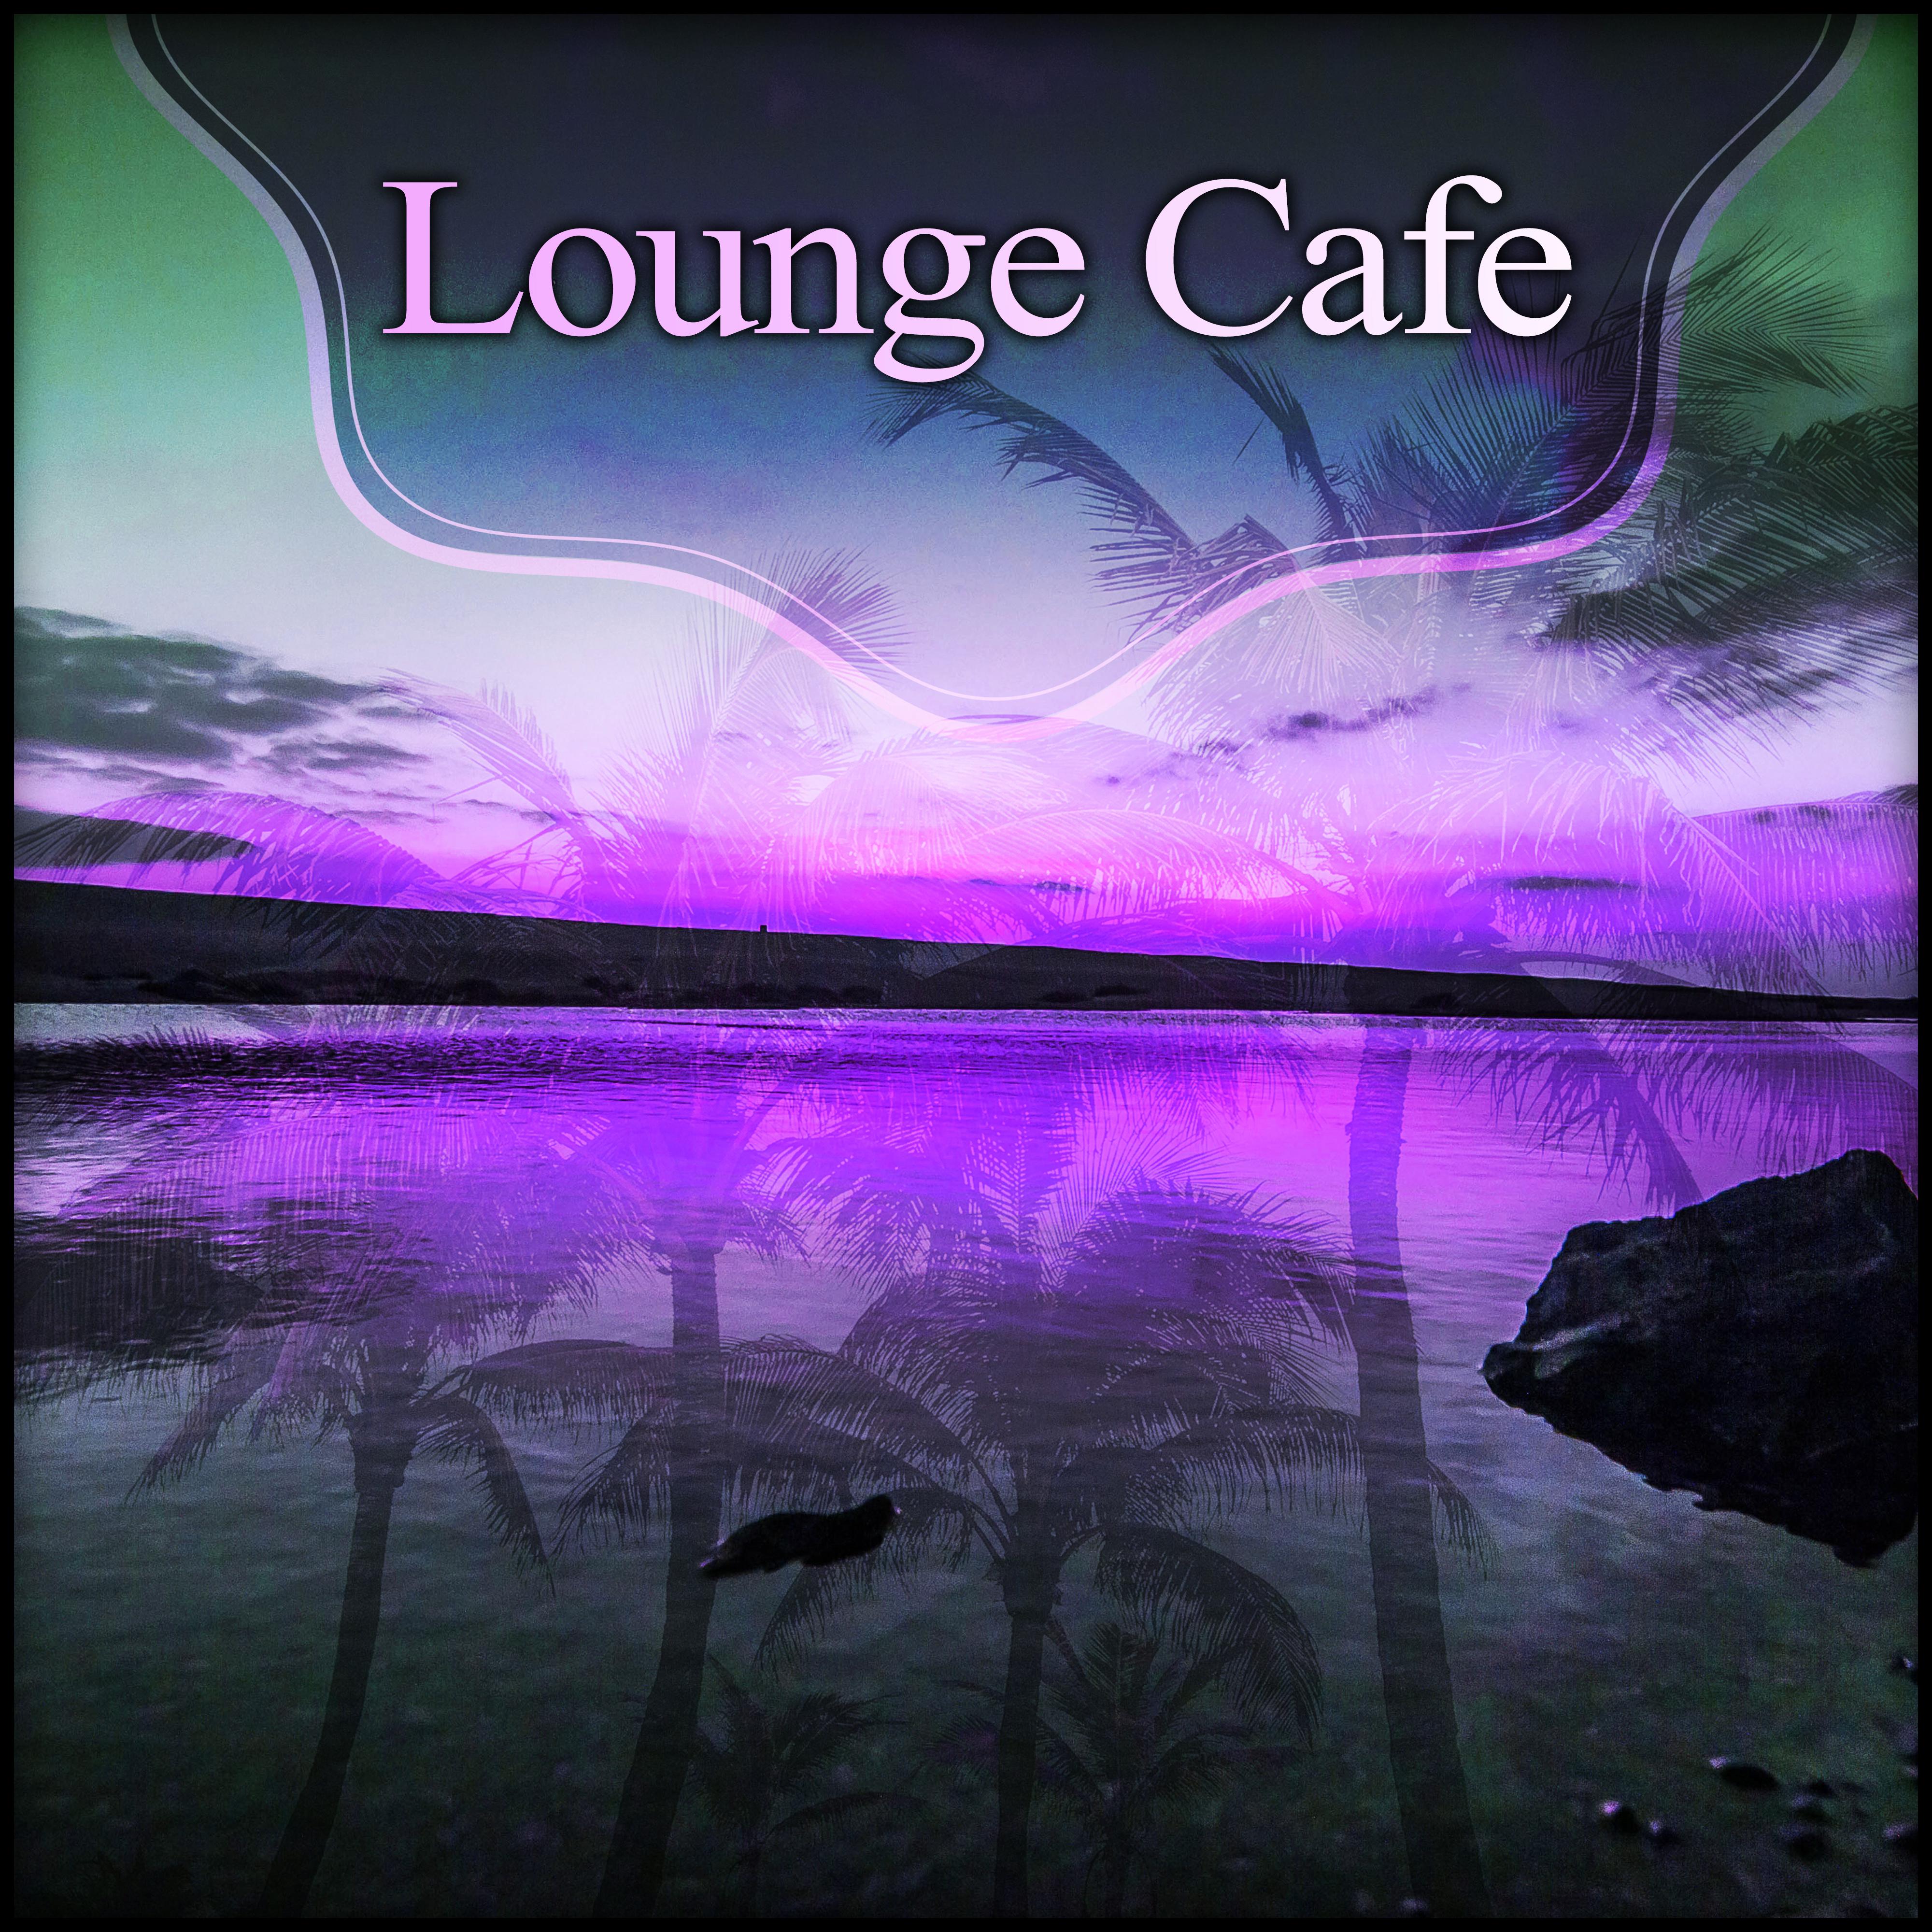 Lounge Cafe – Cafe & Drink Bar, Lounge Summer, Feel Positive Energy, Summer Solstice